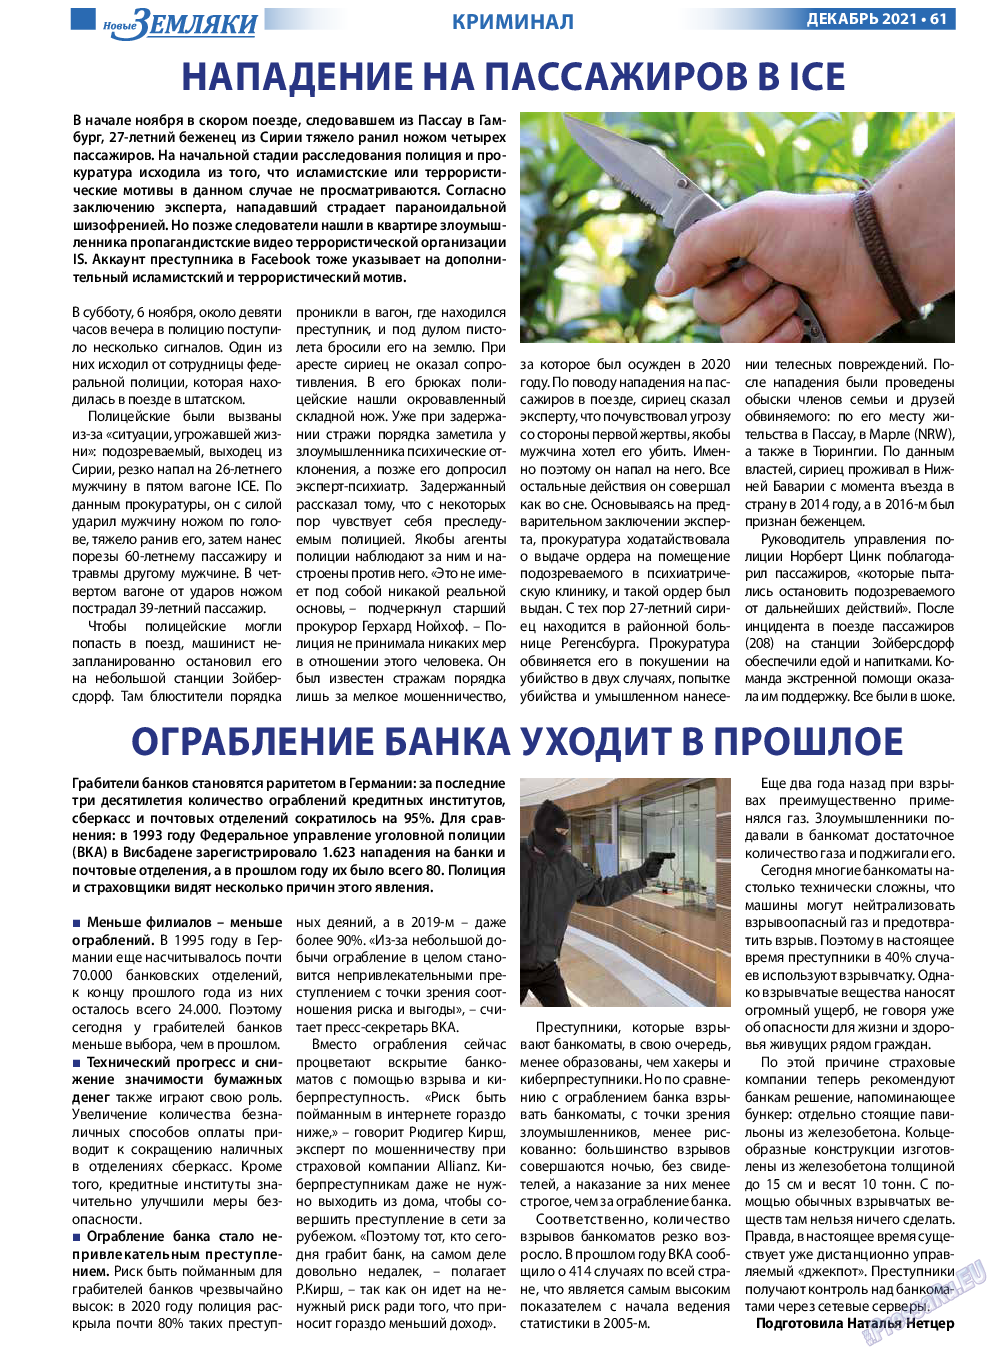 Новые Земляки, газета. 2021 №12 стр.61